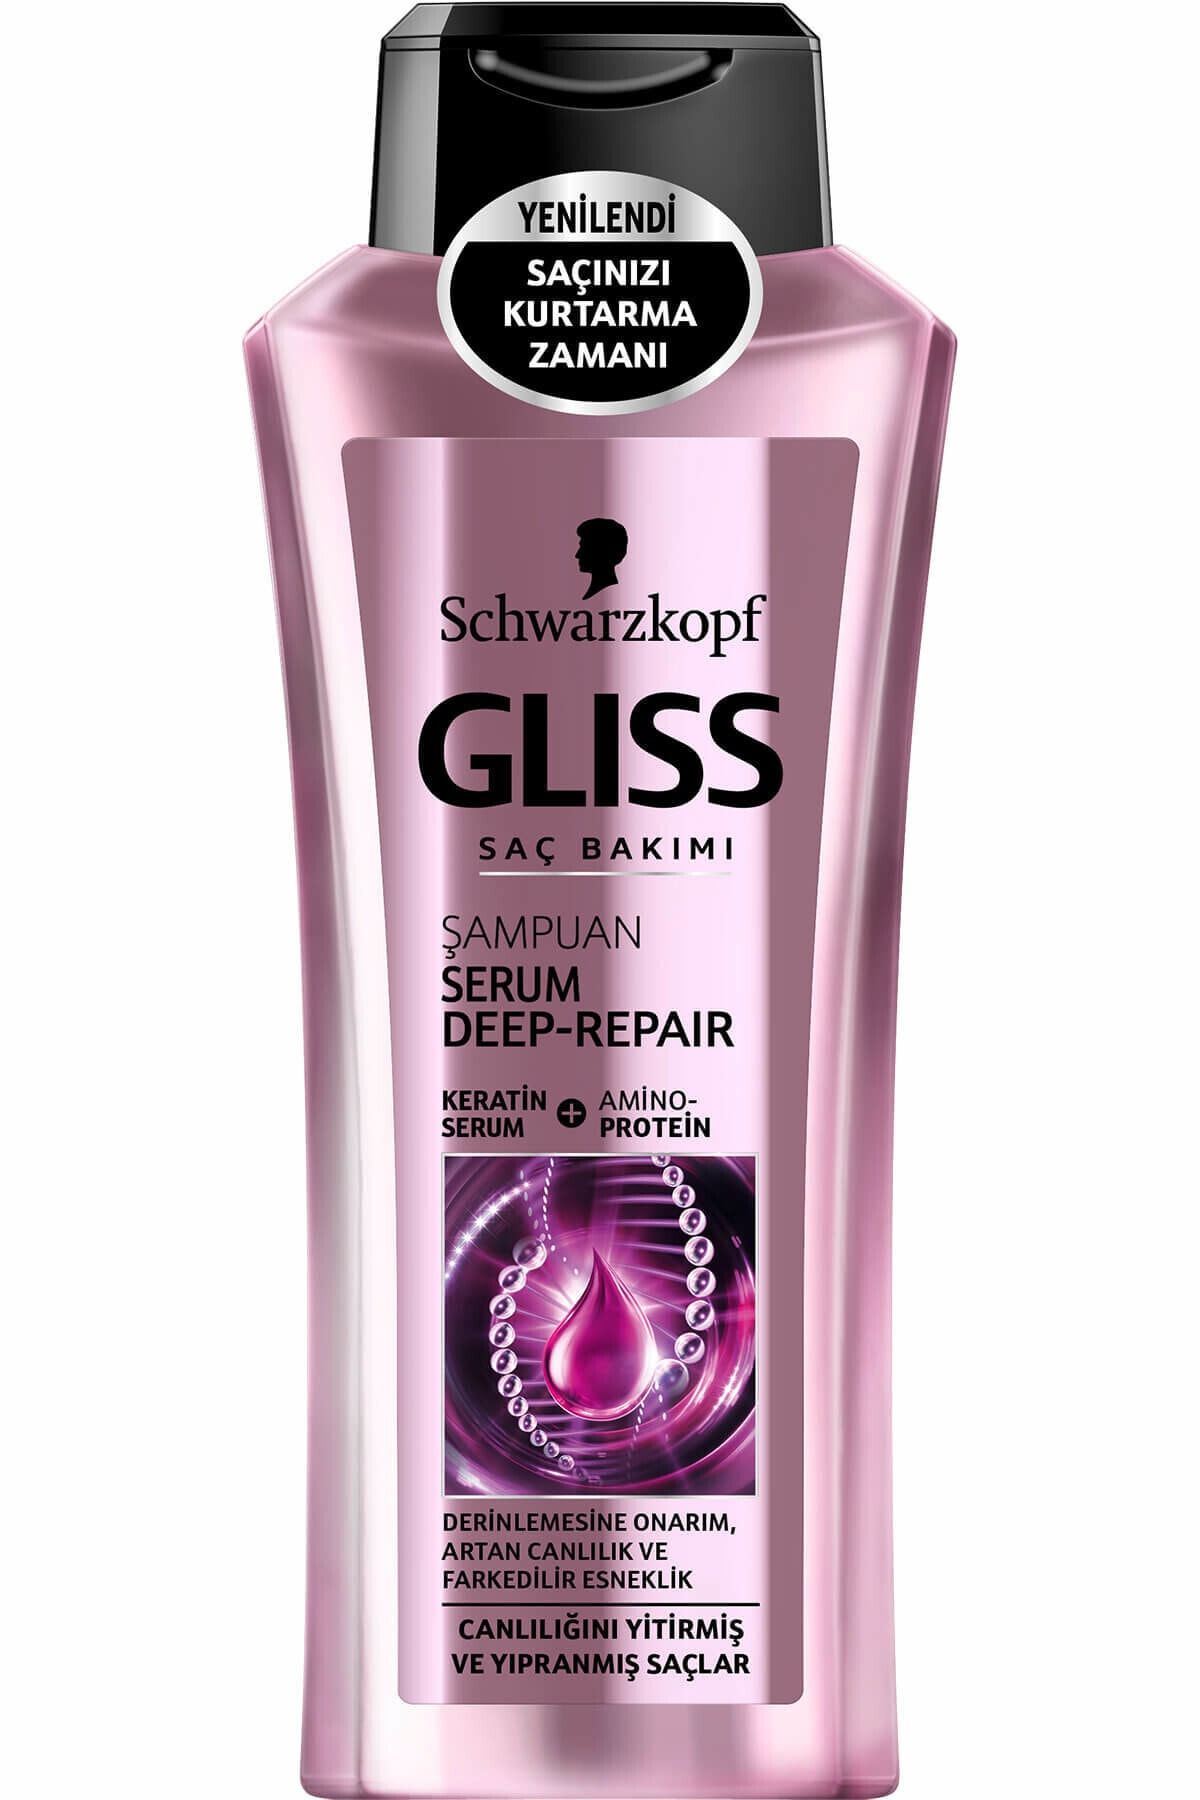 Gliss Yıpranmış Saçlar İçin Şampuan 360 ml